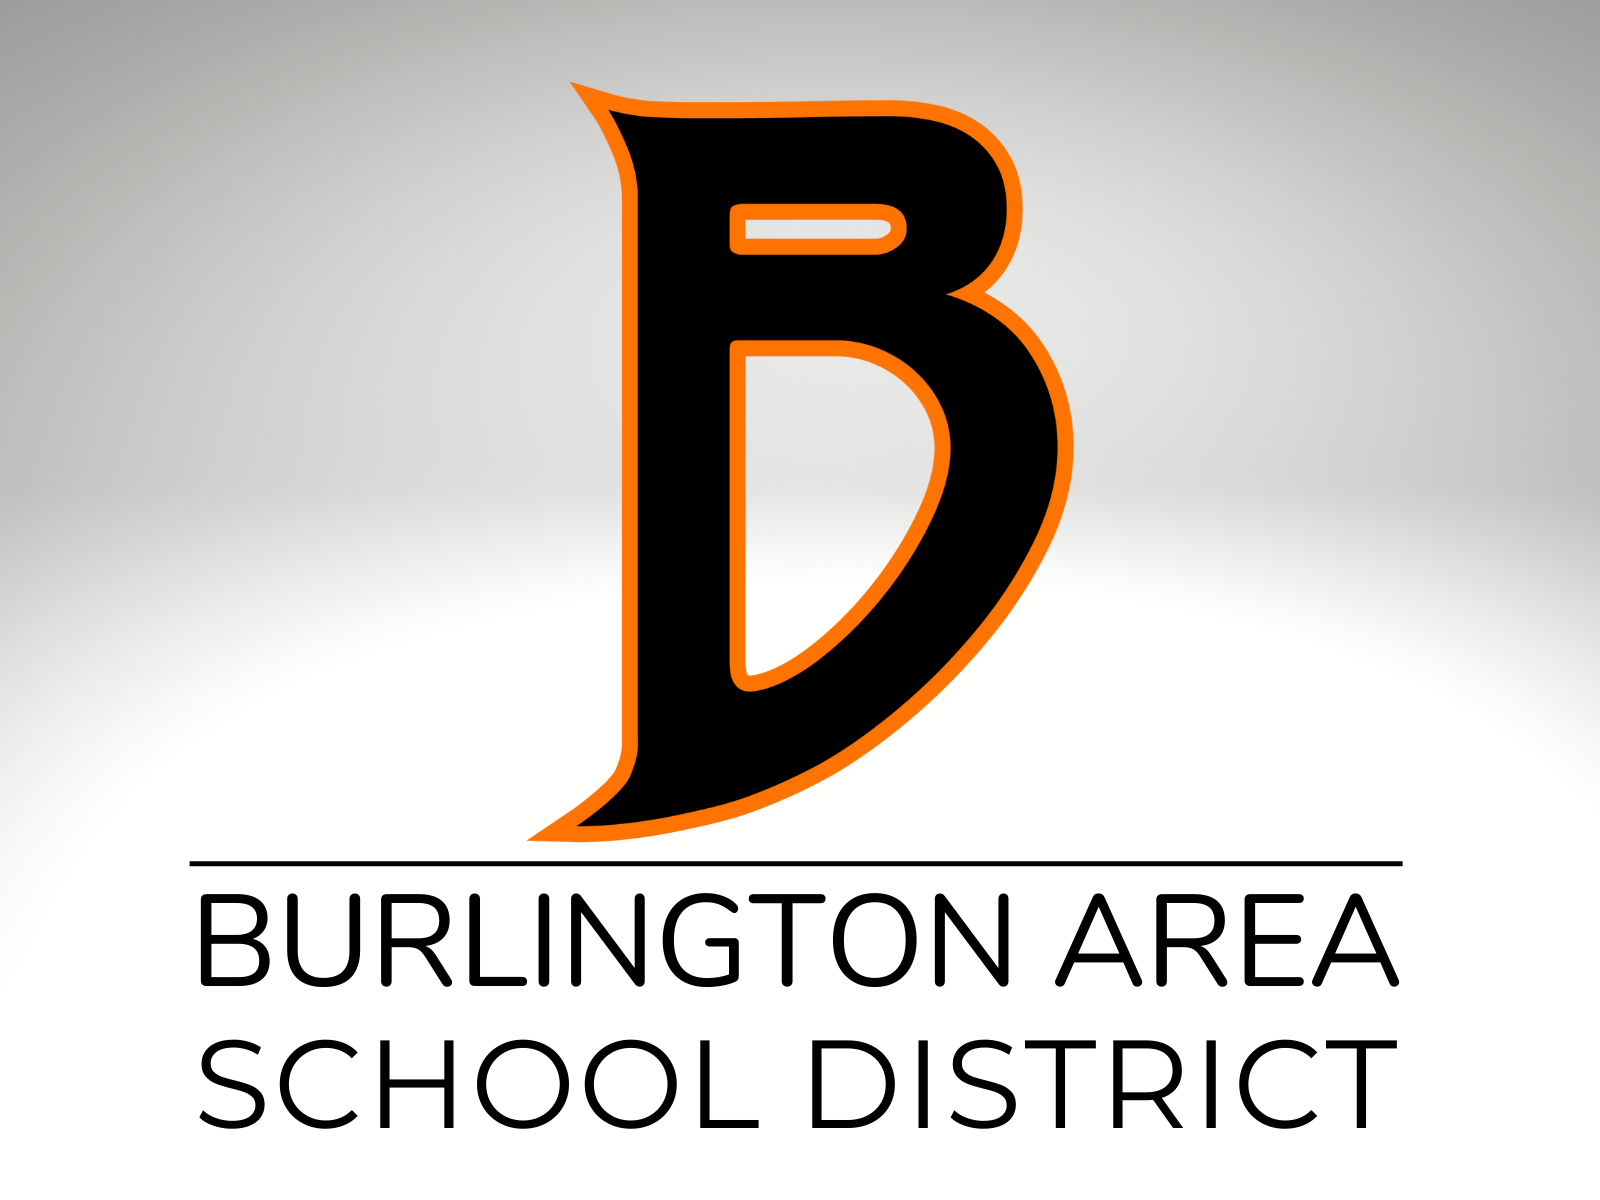 Burlington Area School District